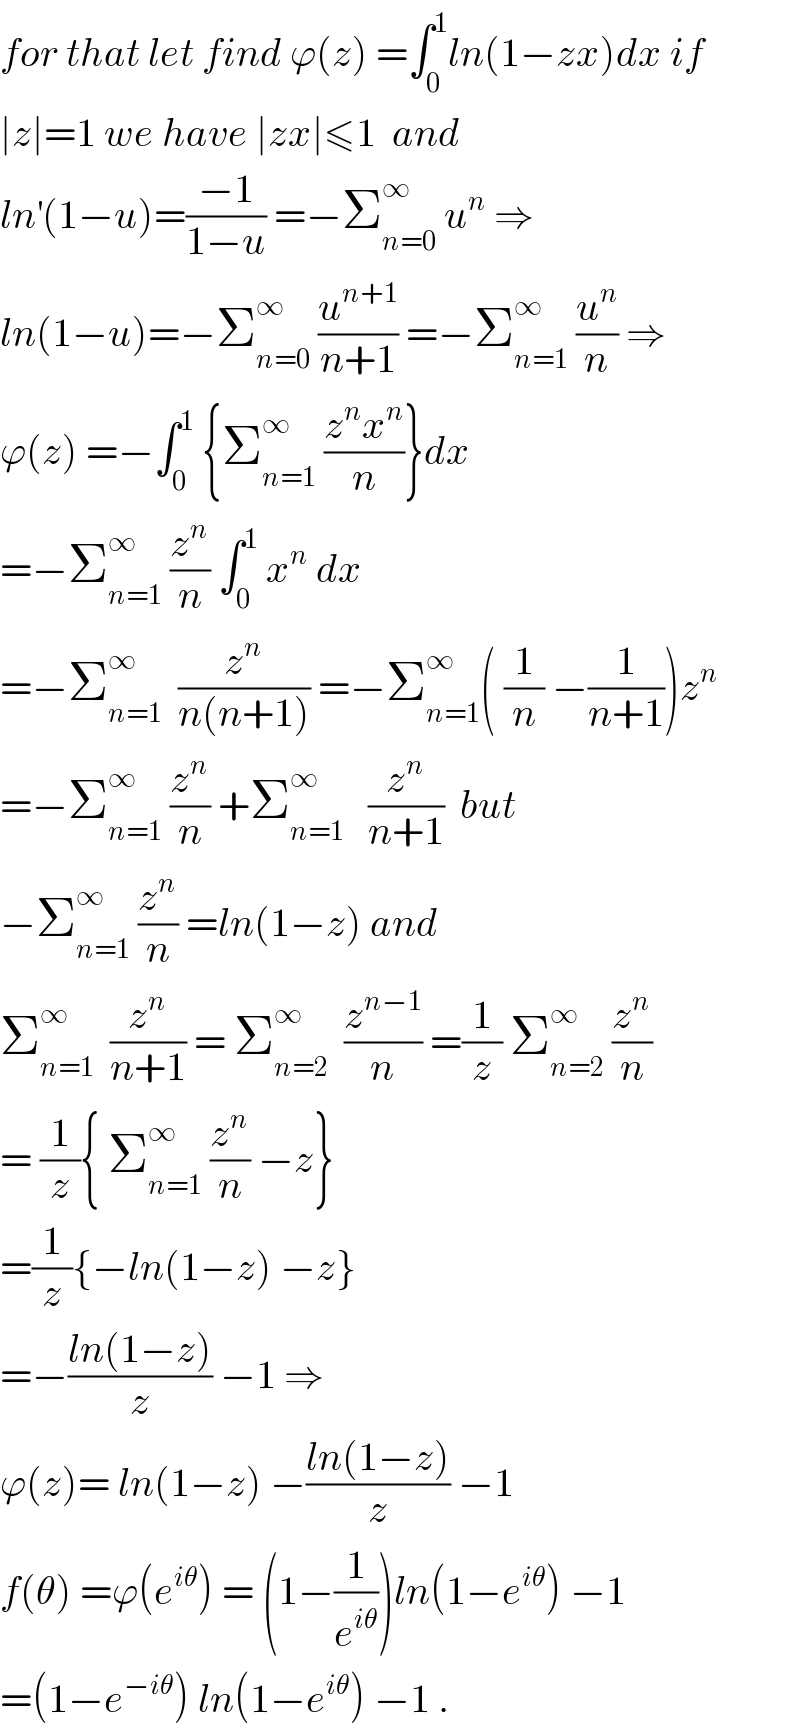 for that let find ϕ(z) =∫_0 ^1 ln(1−zx)dx if  ∣z∣=1 we have ∣zx∣≤1  and  ln^′ (1−u)=((−1)/(1−u)) =−Σ_(n=0) ^∞  u^n  ⇒  ln(1−u)=−Σ_(n=0) ^∞  (u^(n+1) /(n+1)) =−Σ_(n=1) ^∞  (u^n /n) ⇒  ϕ(z) =−∫_0 ^1  {Σ_(n=1) ^∞  ((z^n x^n )/n)}dx  =−Σ_(n=1) ^∞  (z^n /n) ∫_0 ^1  x^n  dx  =−Σ_(n=1) ^∞   (z^n /(n(n+1))) =−Σ_(n=1) ^∞ ( (1/n) −(1/(n+1)))z^n   =−Σ_(n=1) ^∞  (z^n /n) +Σ_(n=1) ^∞    (z^n /(n+1))  but  −Σ_(n=1) ^∞  (z^n /n) =ln(1−z) and  Σ_(n=1) ^∞   (z^n /(n+1)) = Σ_(n=2) ^∞   (z^(n−1) /n) =(1/z) Σ_(n=2) ^∞  (z^n /n)  = (1/z){ Σ_(n=1) ^∞  (z^n /n) −z}  =(1/z){−ln(1−z) −z}  =−((ln(1−z))/z) −1 ⇒  ϕ(z)= ln(1−z) −((ln(1−z))/z) −1  f(θ) =ϕ(e^(iθ) ) = (1−(1/e^(iθ) ))ln(1−e^(iθ) ) −1  =(1−e^(−iθ) ) ln(1−e^(iθ) ) −1 .  